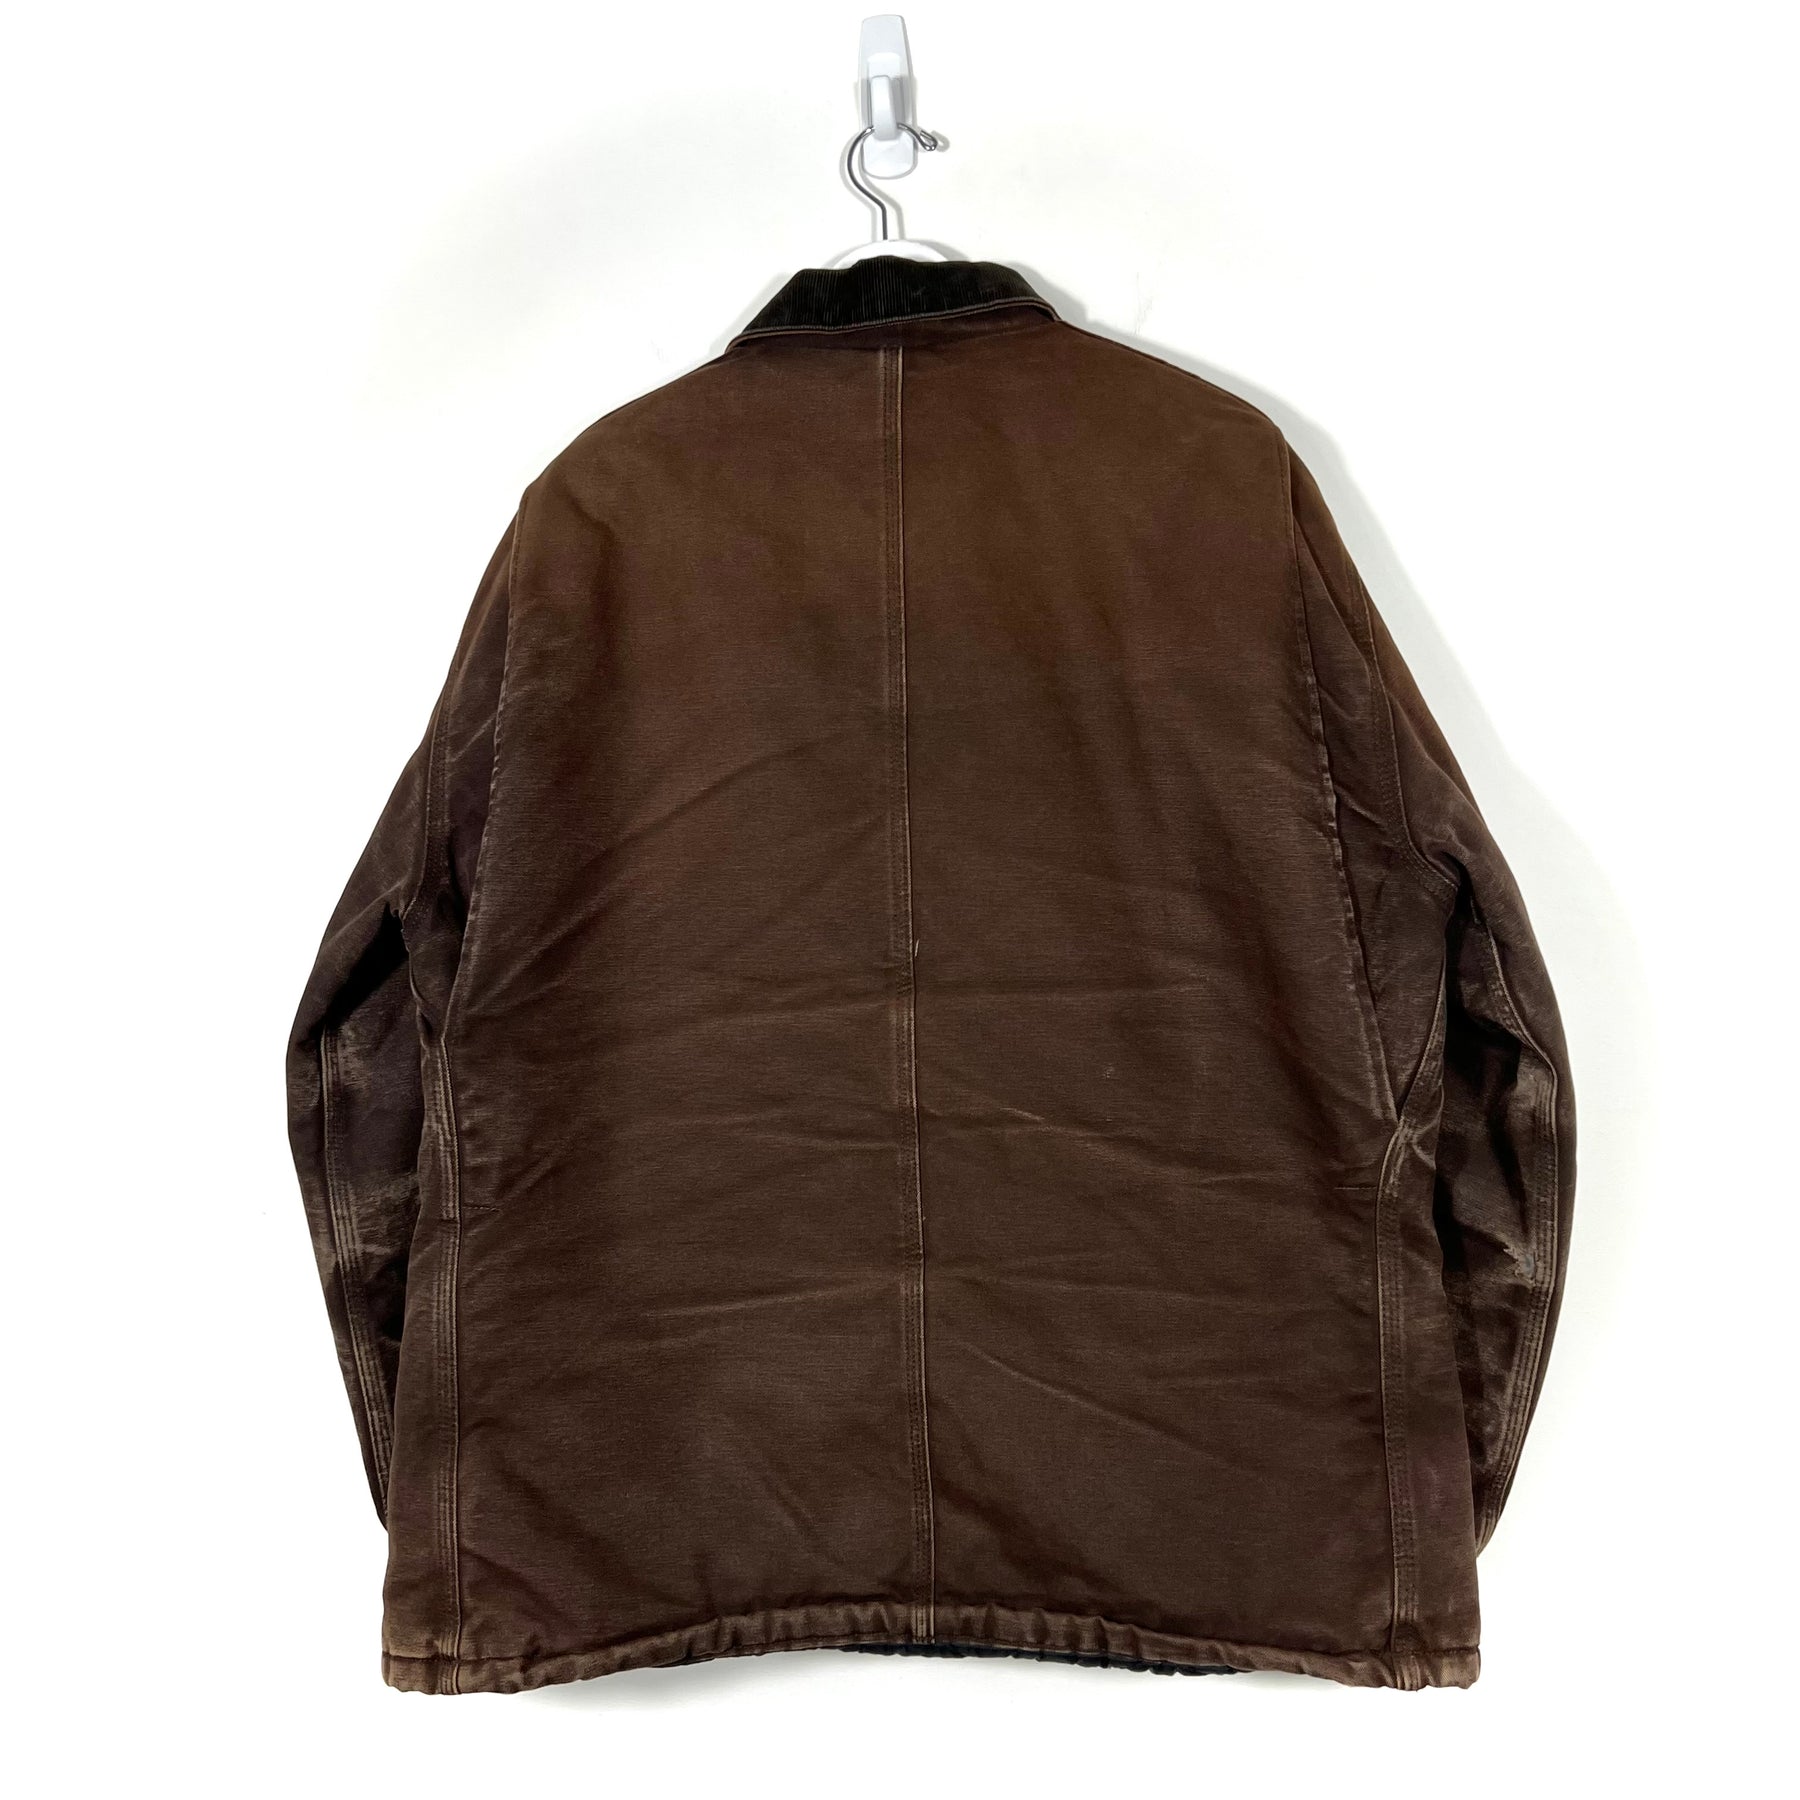 Vintage Carhartt Denim Jacket - Men's Large